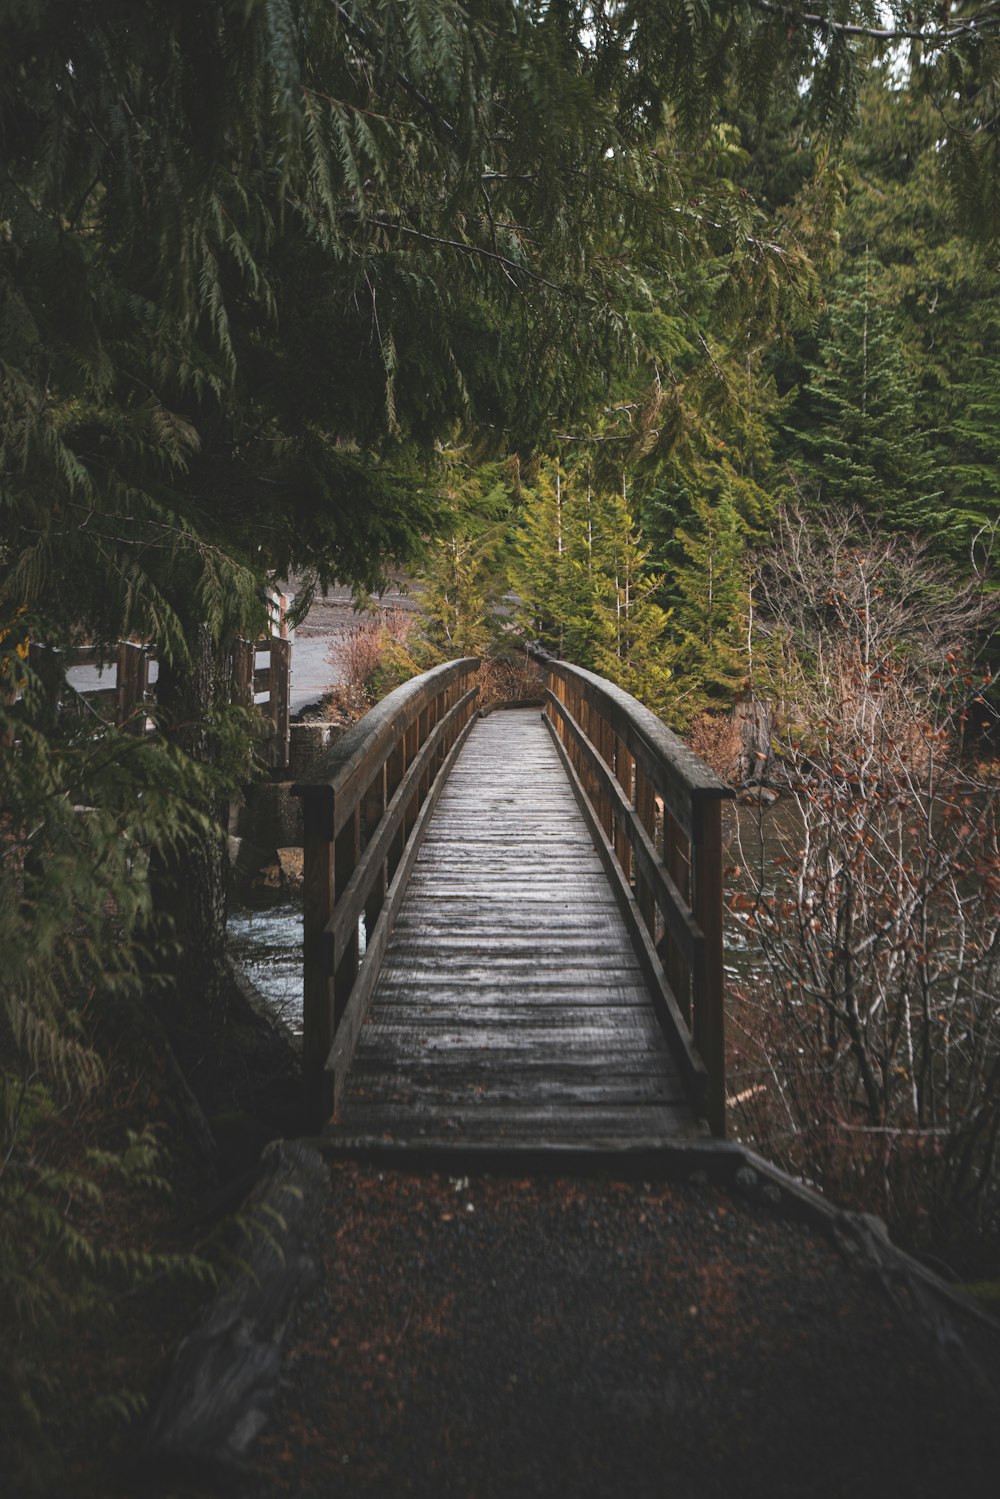 braune Holzbrücke über Wasser in der Nähe von Bäumen während des Tages